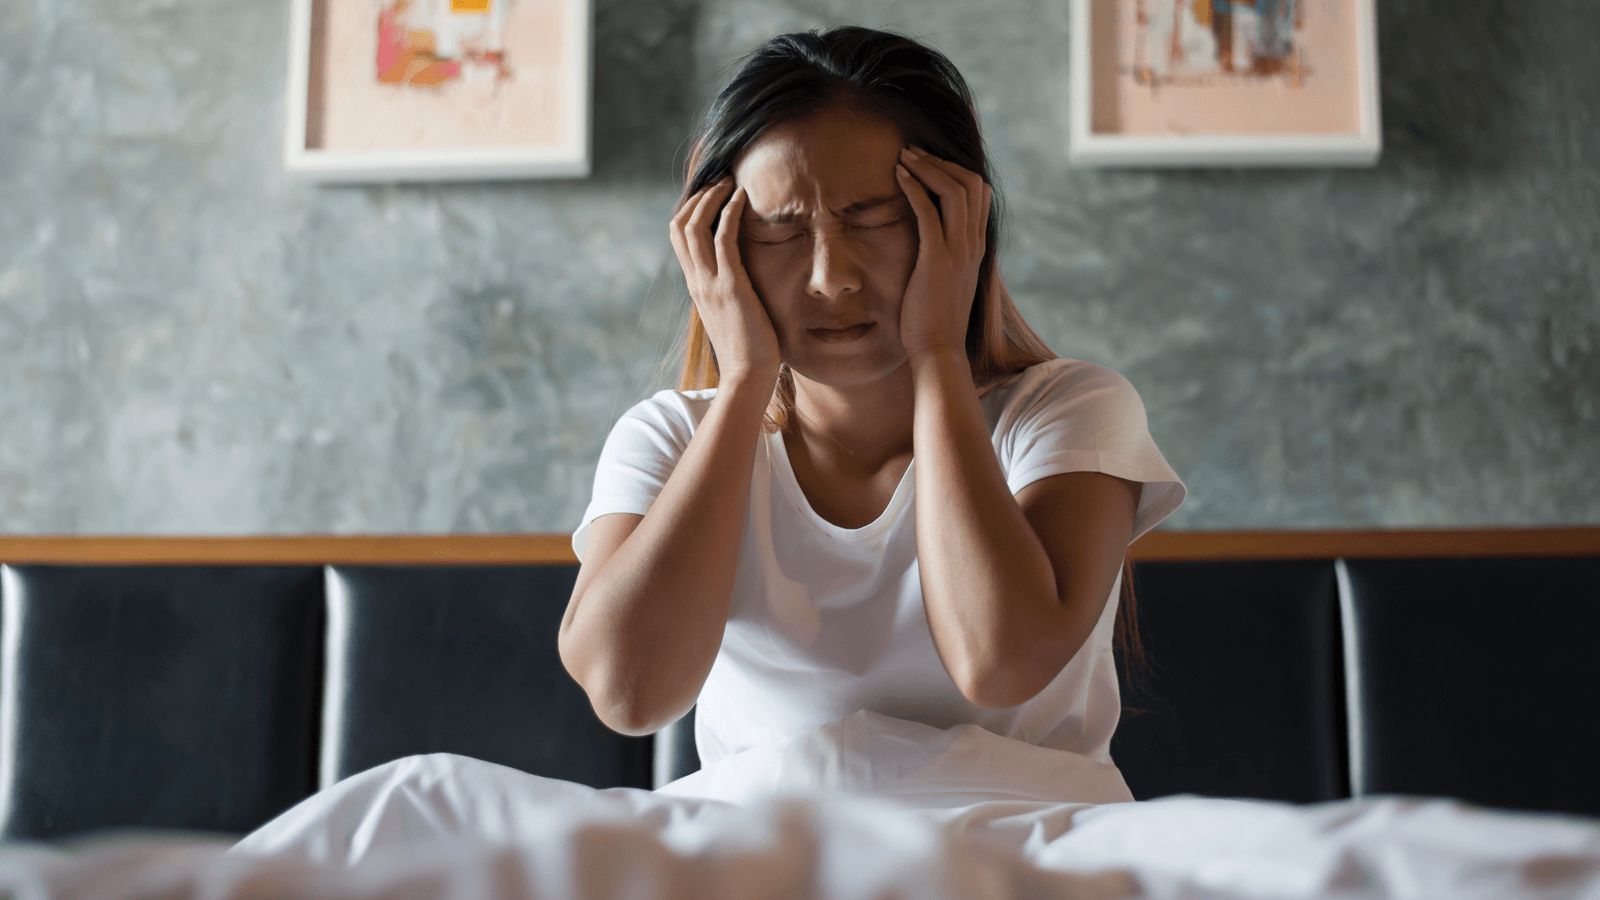 Trắc nghiệm rối loạn giấc ngủ PSQI giúp chẩn đoán bệnh rối loạn giấc ngủ